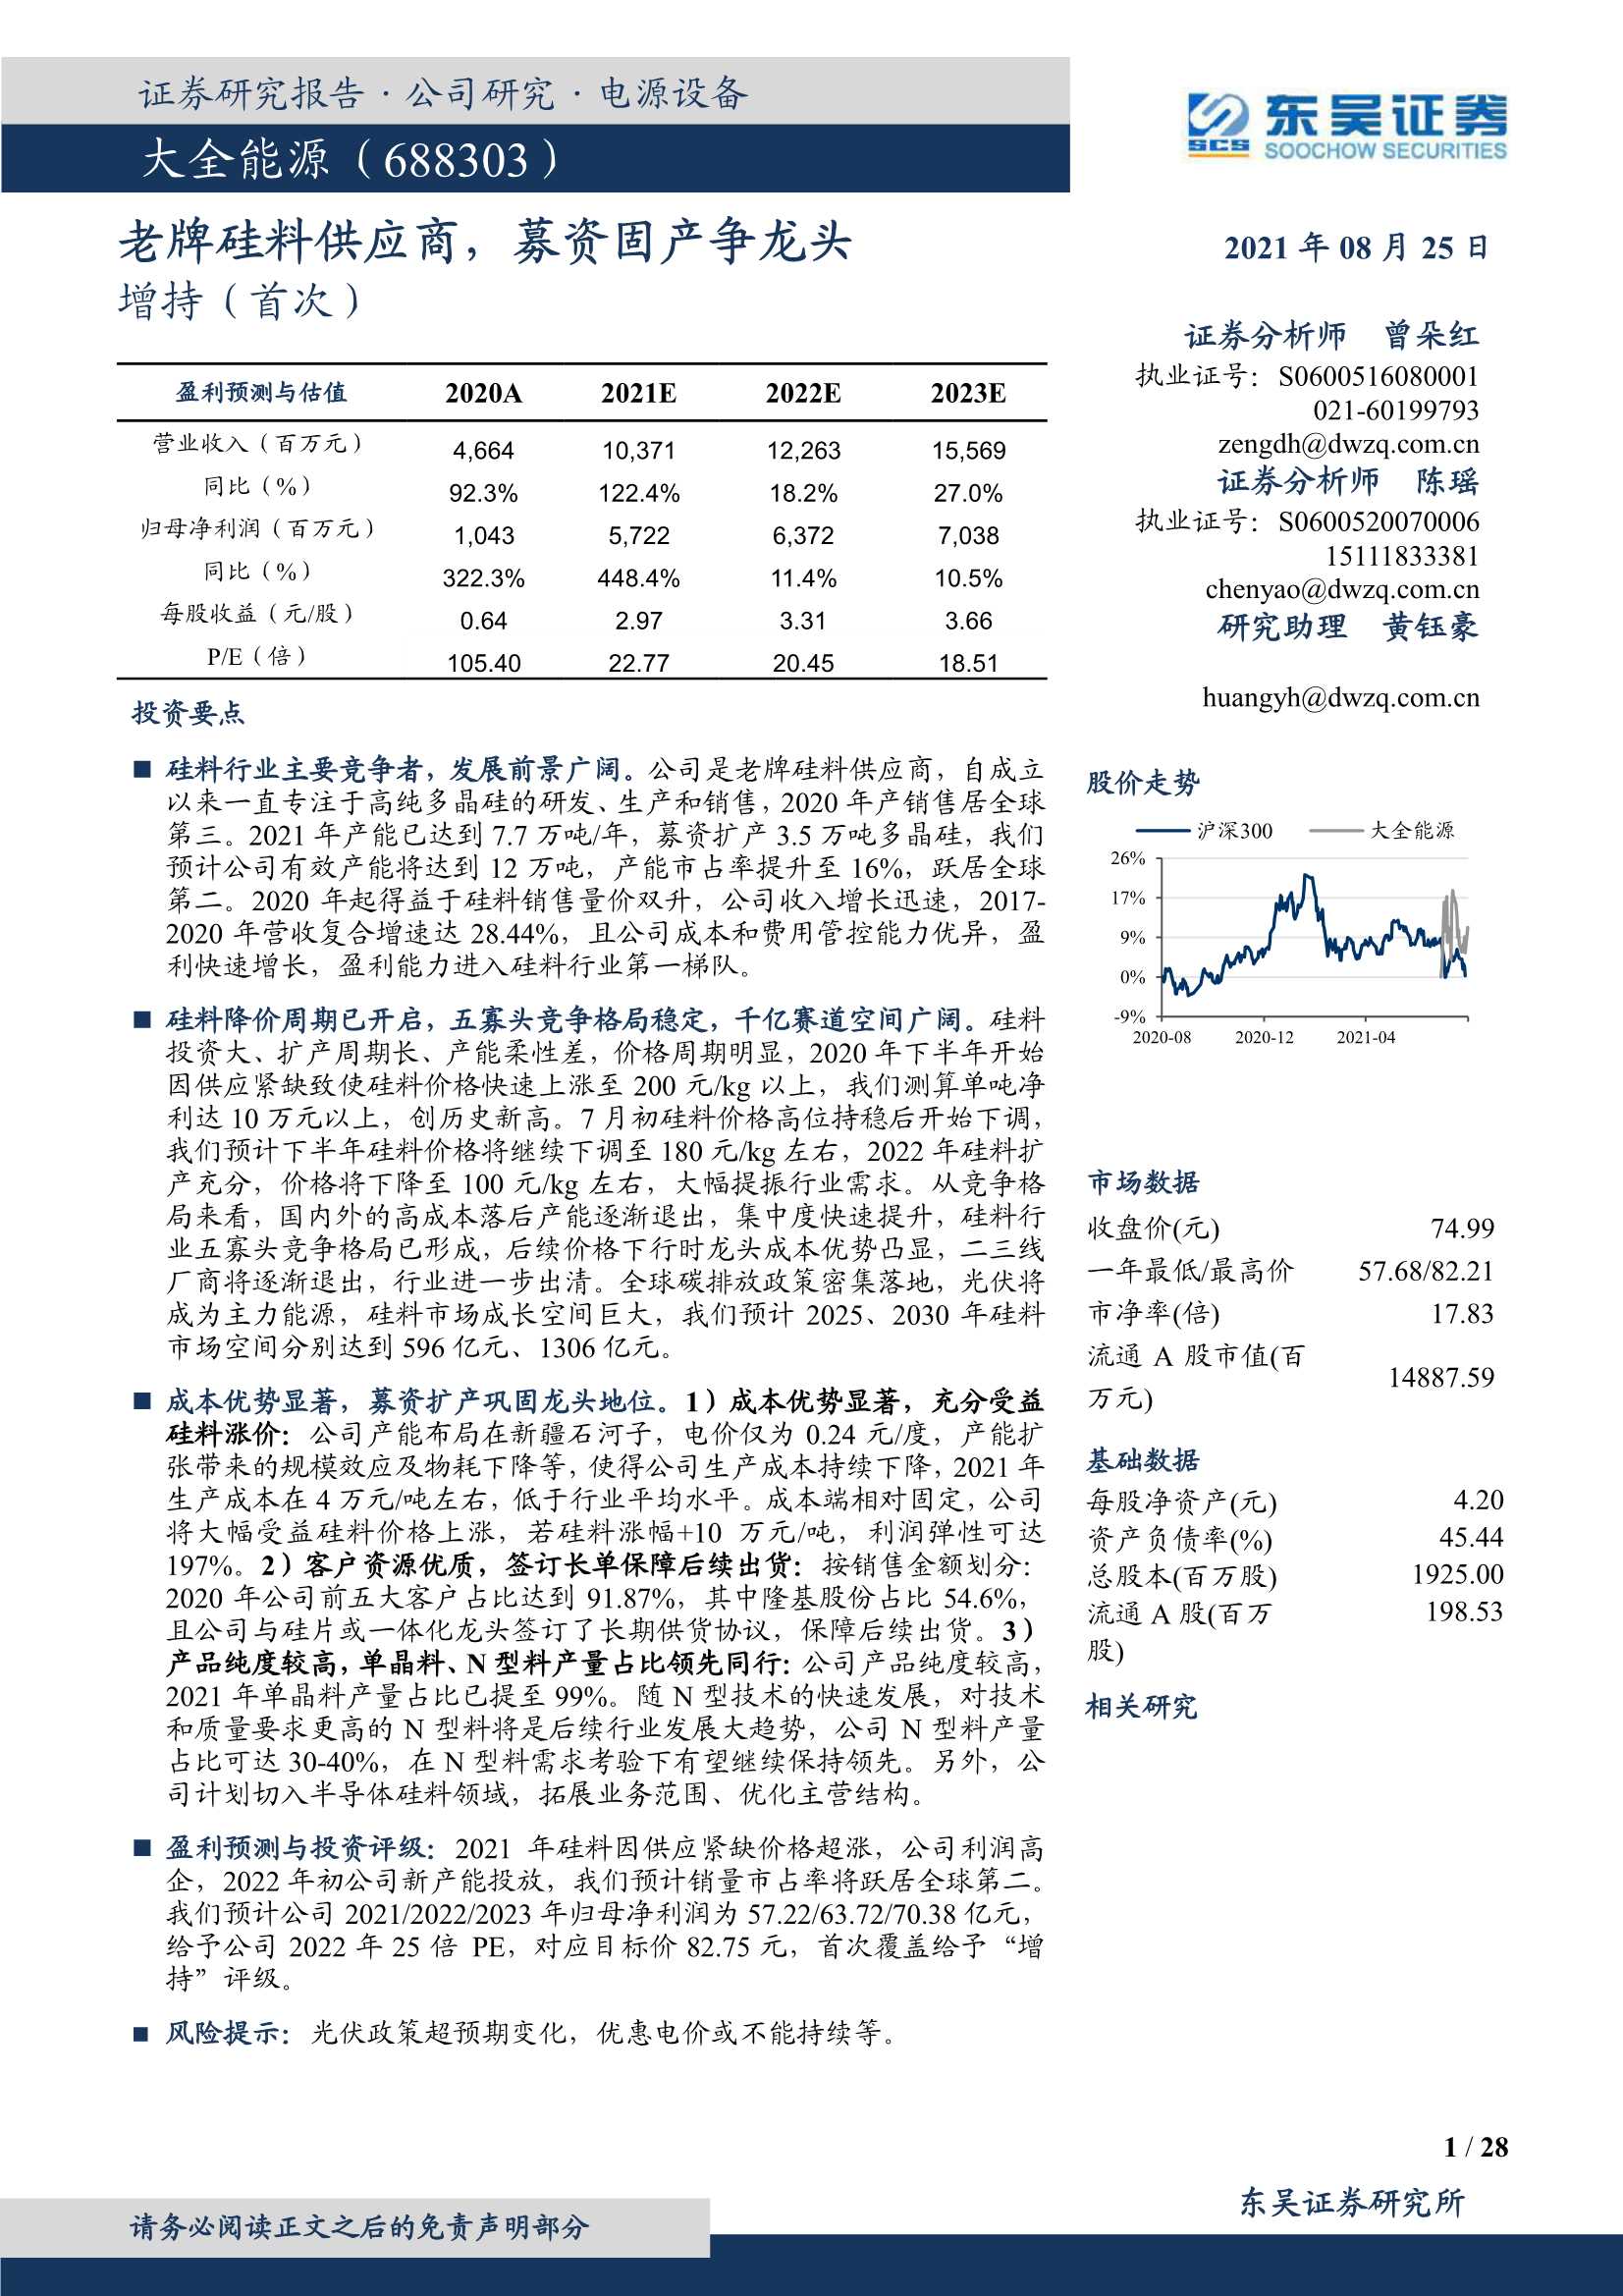 东吴证券-大全能源-688303-老牌硅料供应商，募资固产争龙头-20210825-28页